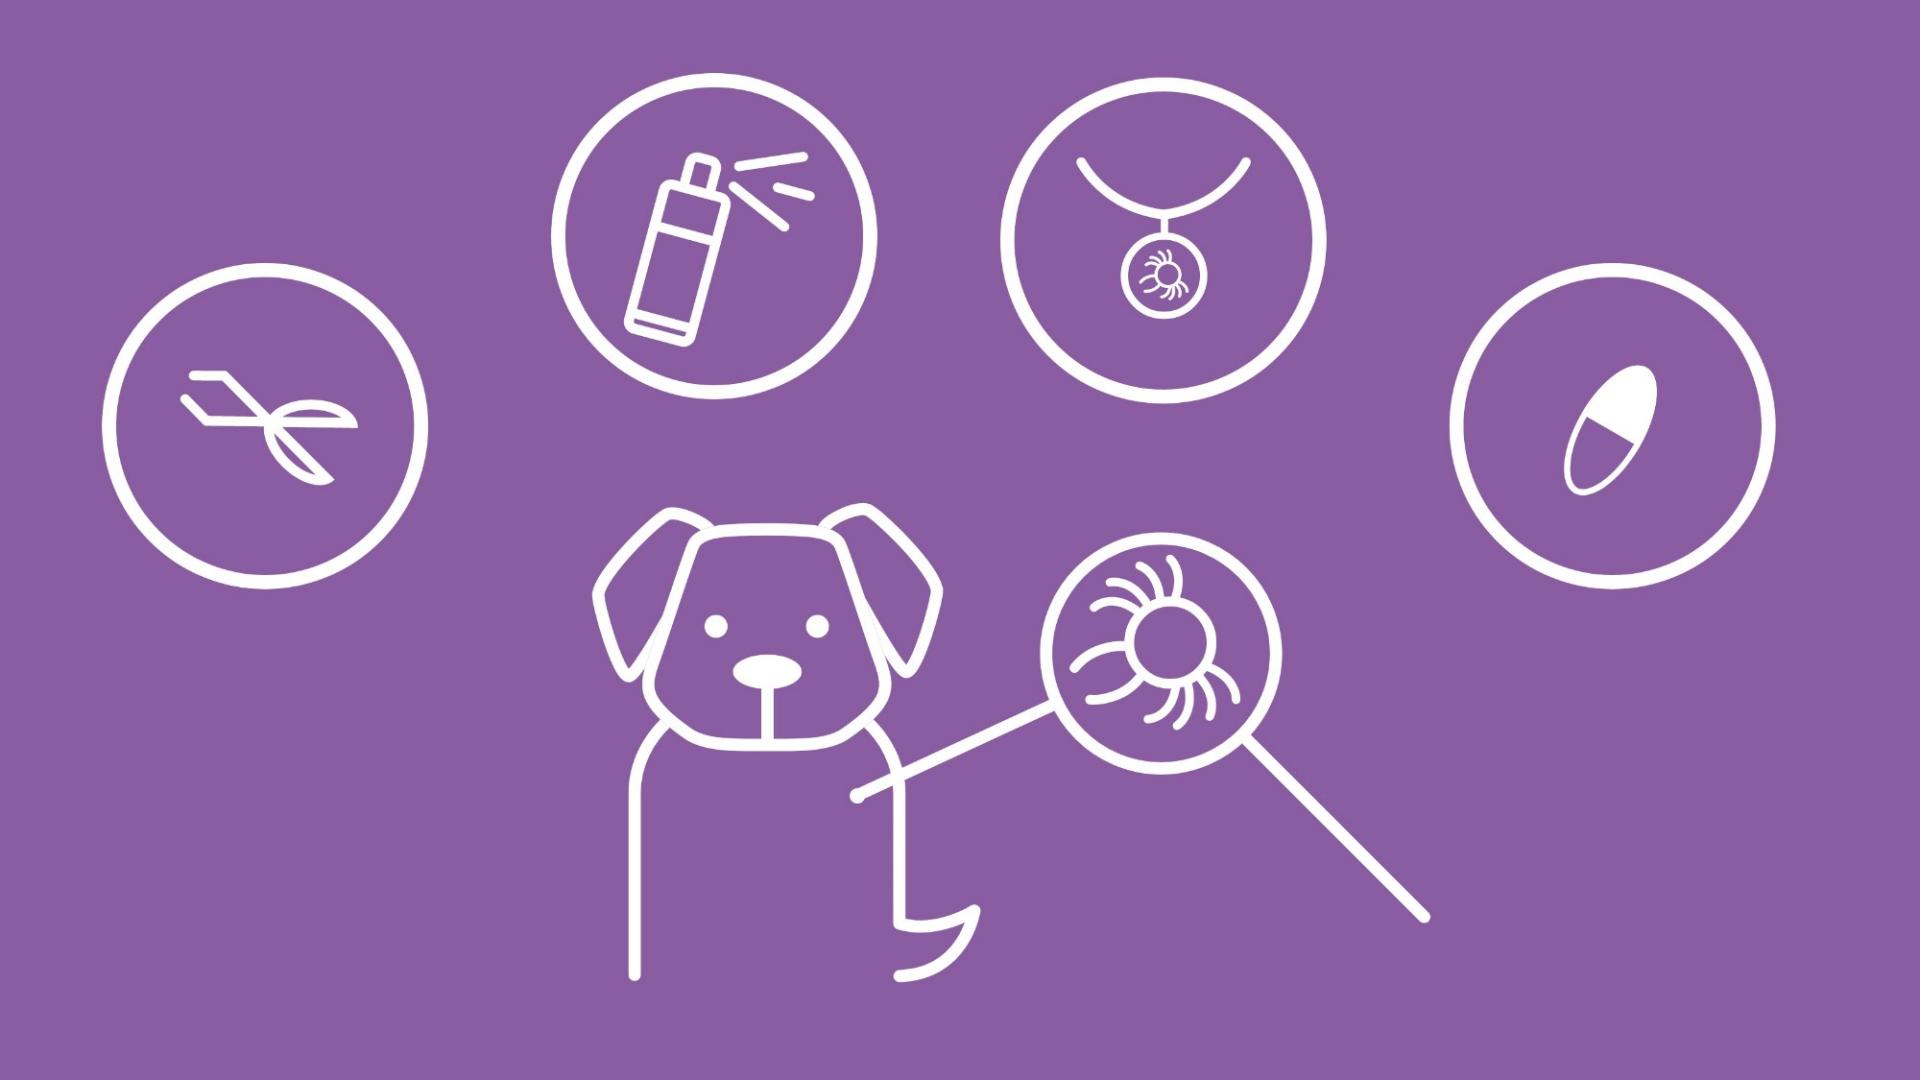 Die Grafik zeigt einen Hund mit per Lupe vergrößerter Zecke. Über ihm werden 4 Icons für Tabletten, Spray, Halsband und Zange dargestellt. 